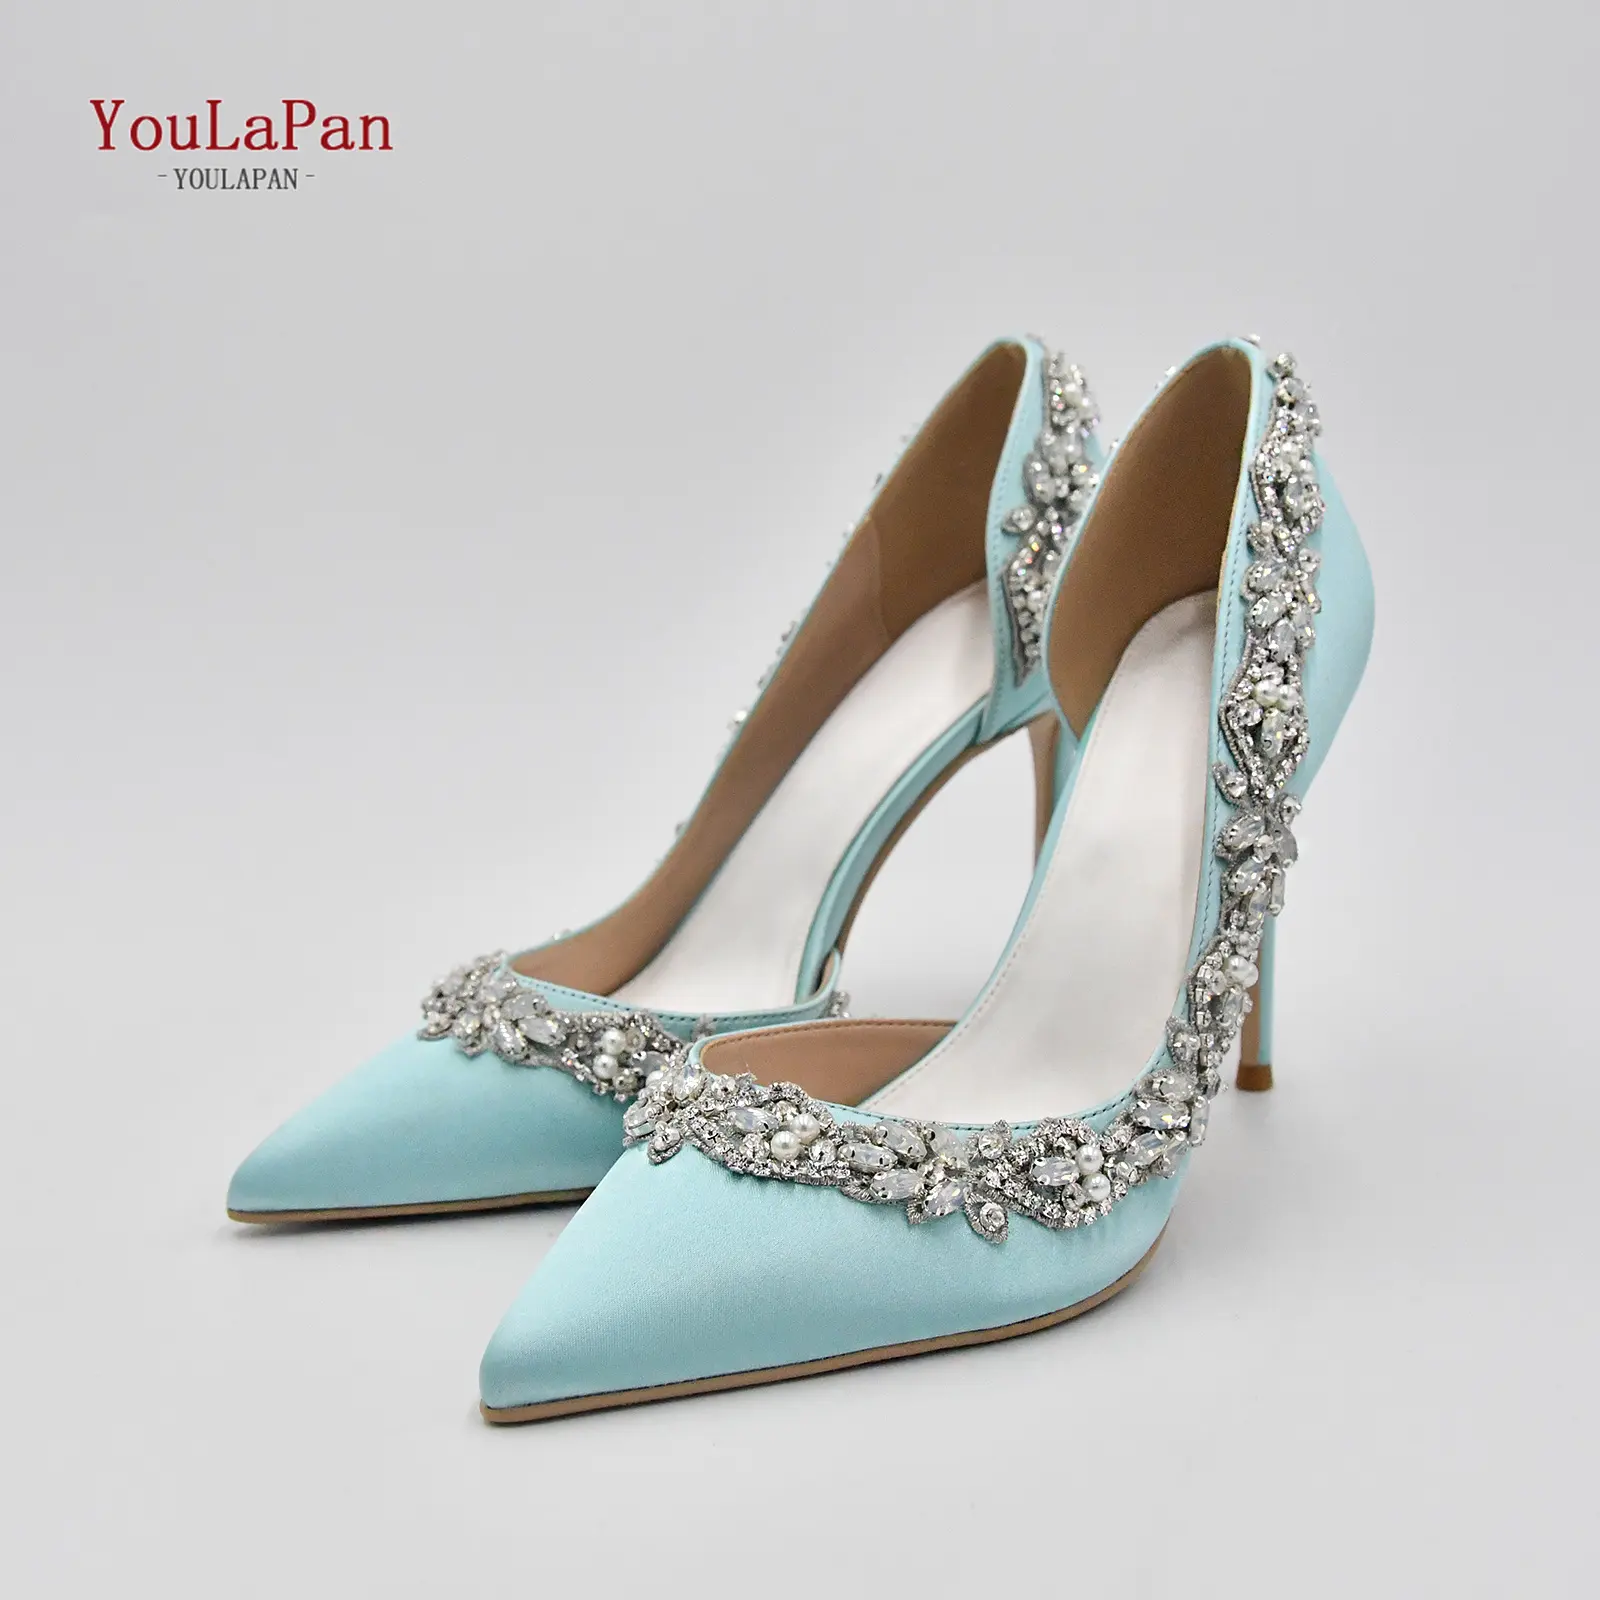 YouLaPan A46 produttore diretto scarpe da donna scarpe da festa pere di lusso diamante scarpe asiatiche in raso di alta qualità